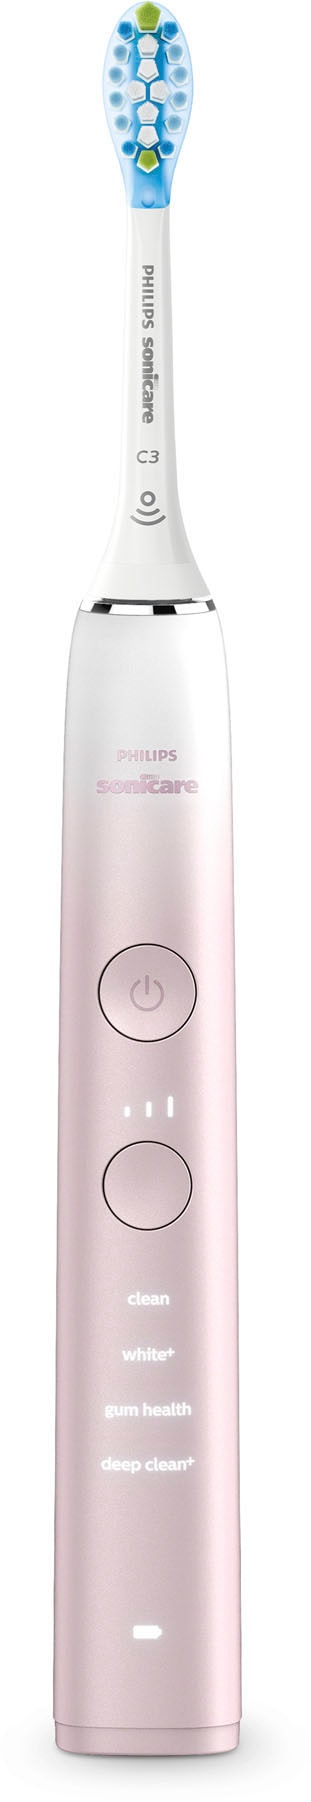 Philips Sonicare Elektrische Zahnbürste »DiamondClean 9000 Special Edition HX9911«, 1 St. Aufsteckbürsten, mit integriertem Drucksensor, 4 Putzprogramme und 3 Intensitätsstufen